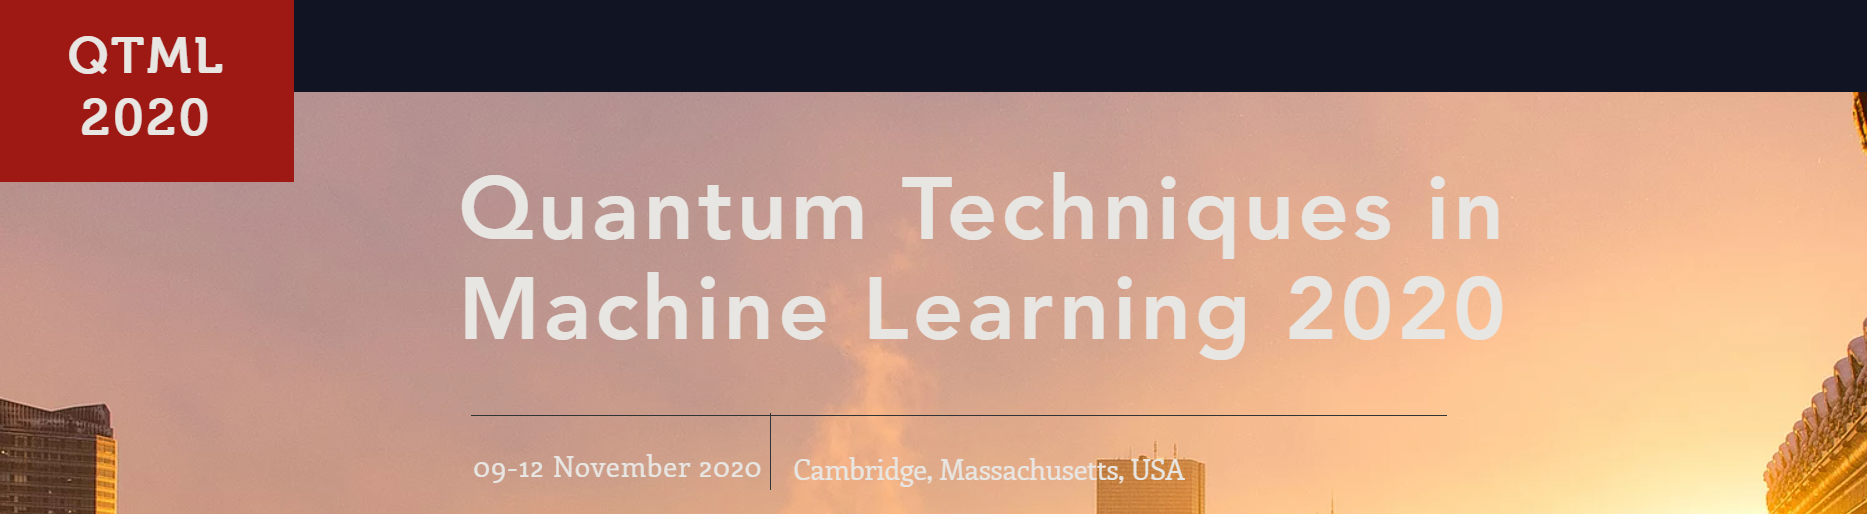 QTML2020: Quantum Techniques in Machine Learning 2020